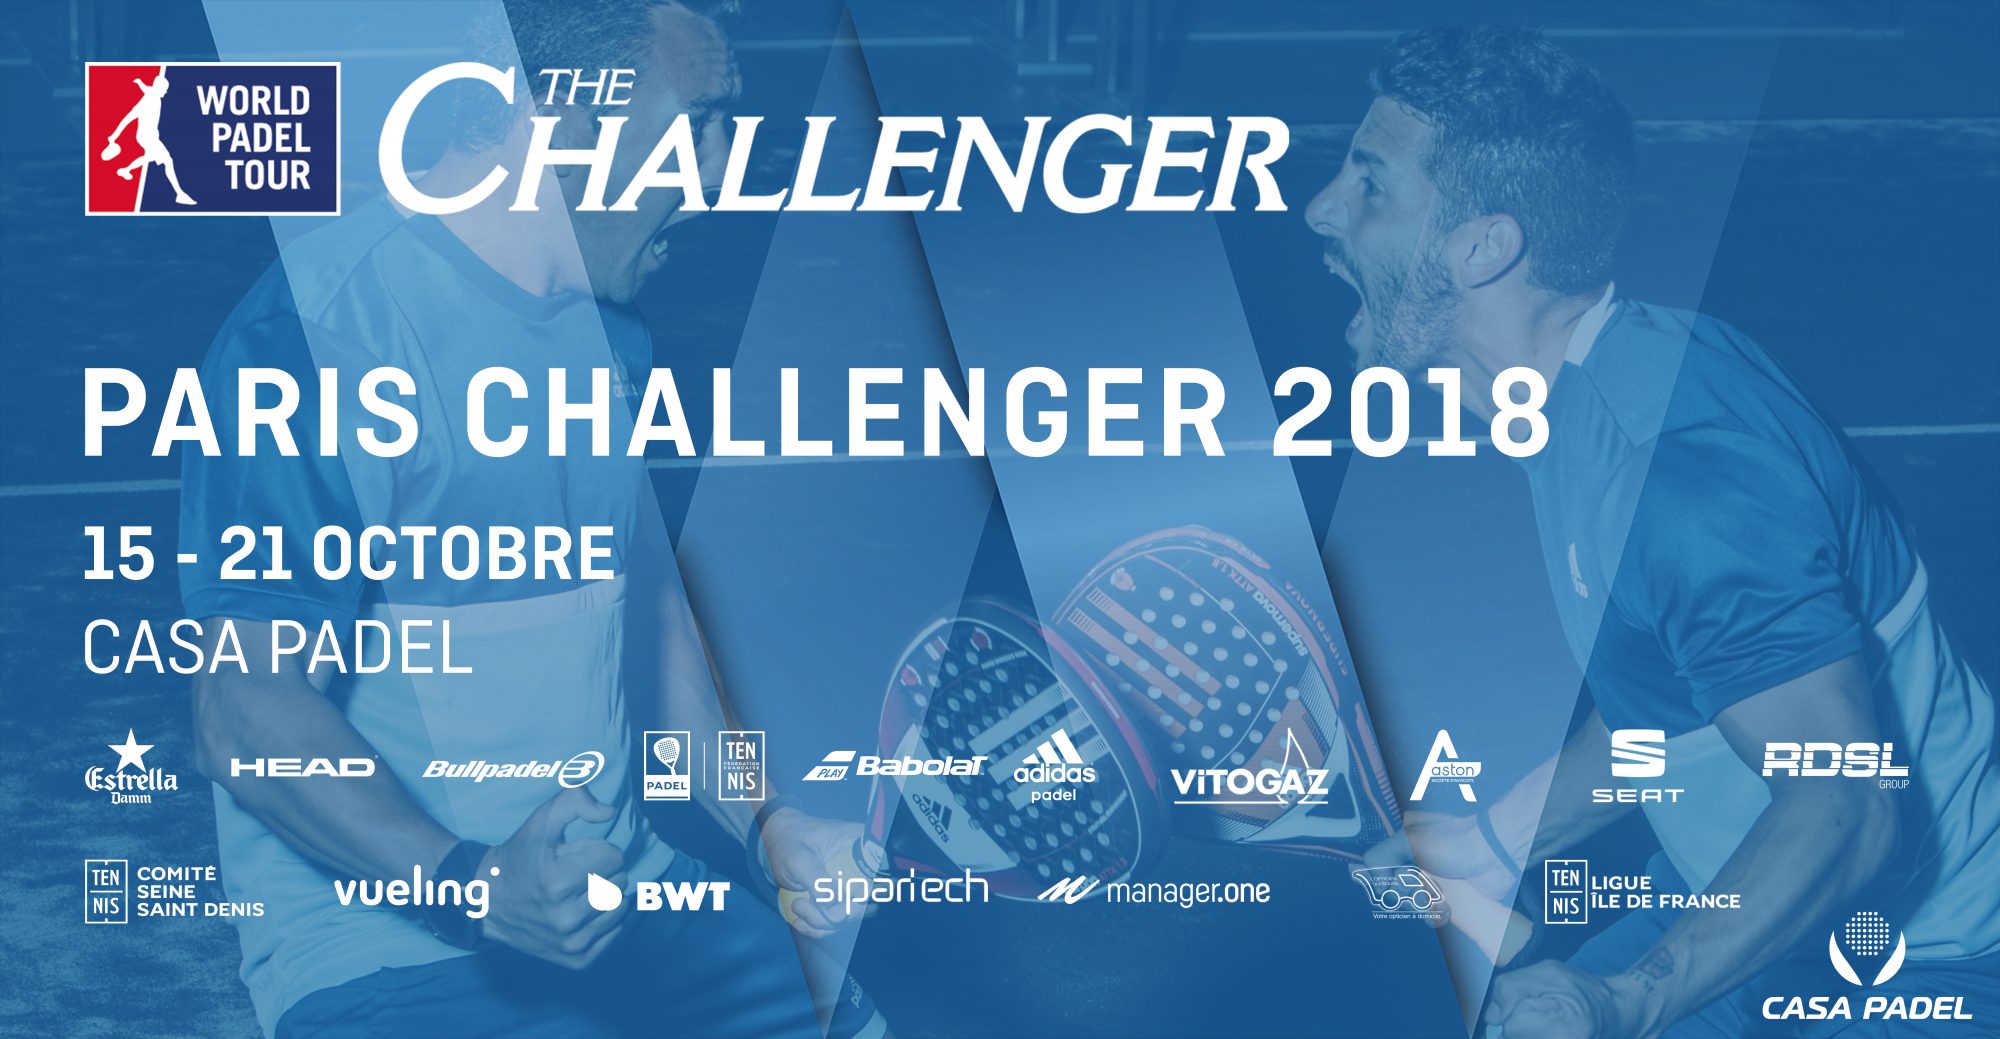 1/2 - Cepero / Nerone VS Chingotto / Tello - Paris Challenger 2018 - Casa Padel